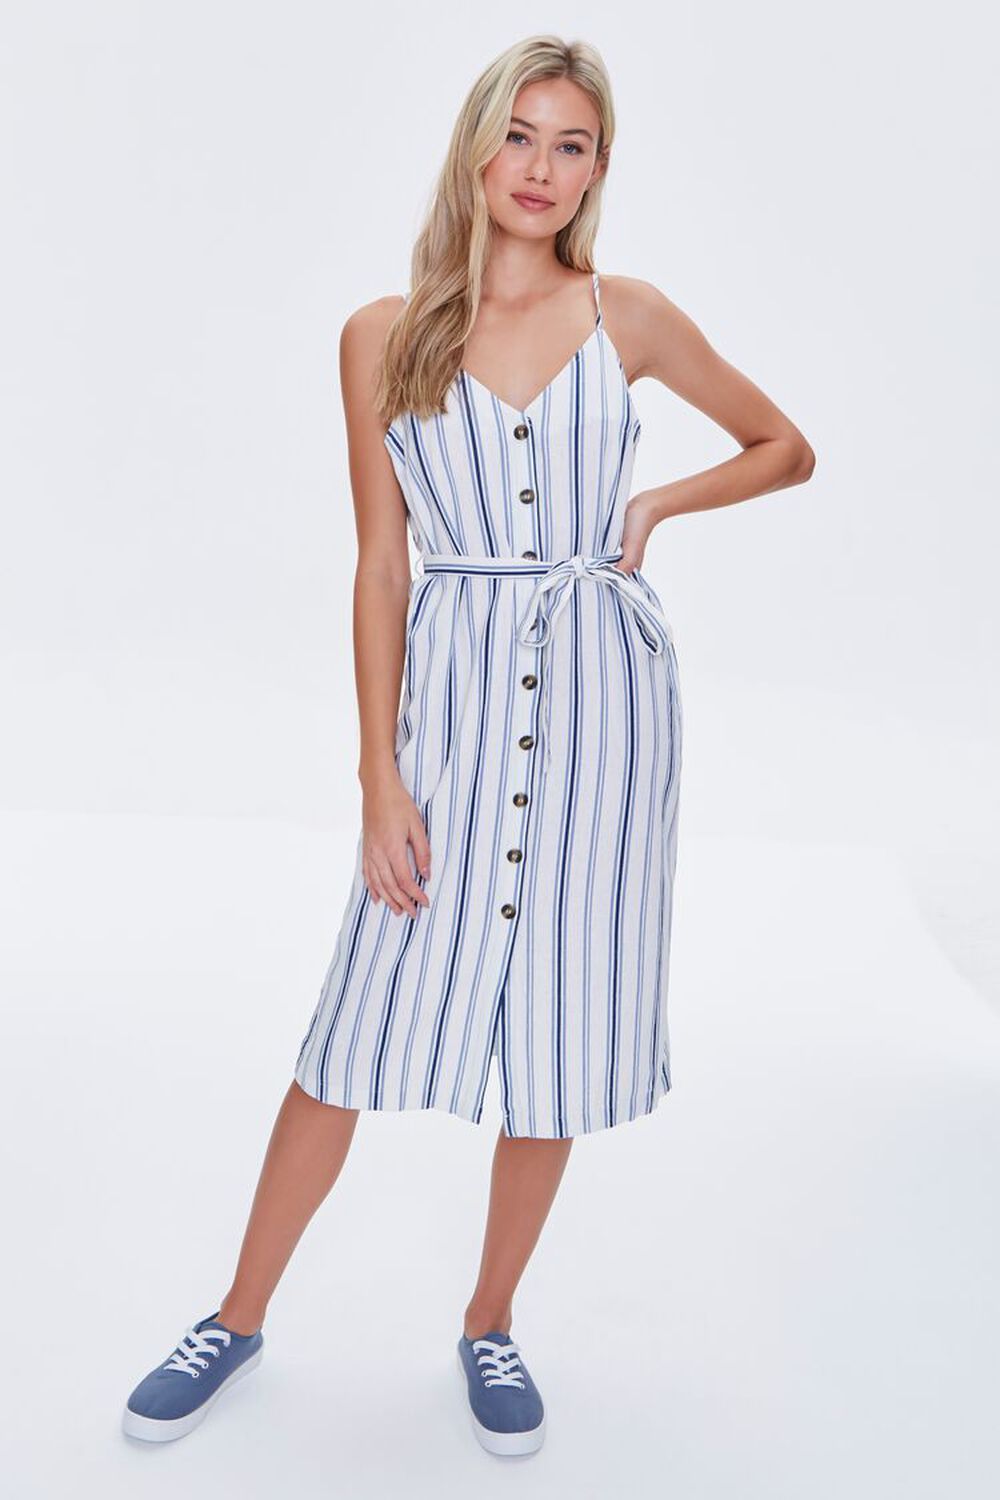 CREAM/BLUE Striped Linen-Blend Dress, image 2